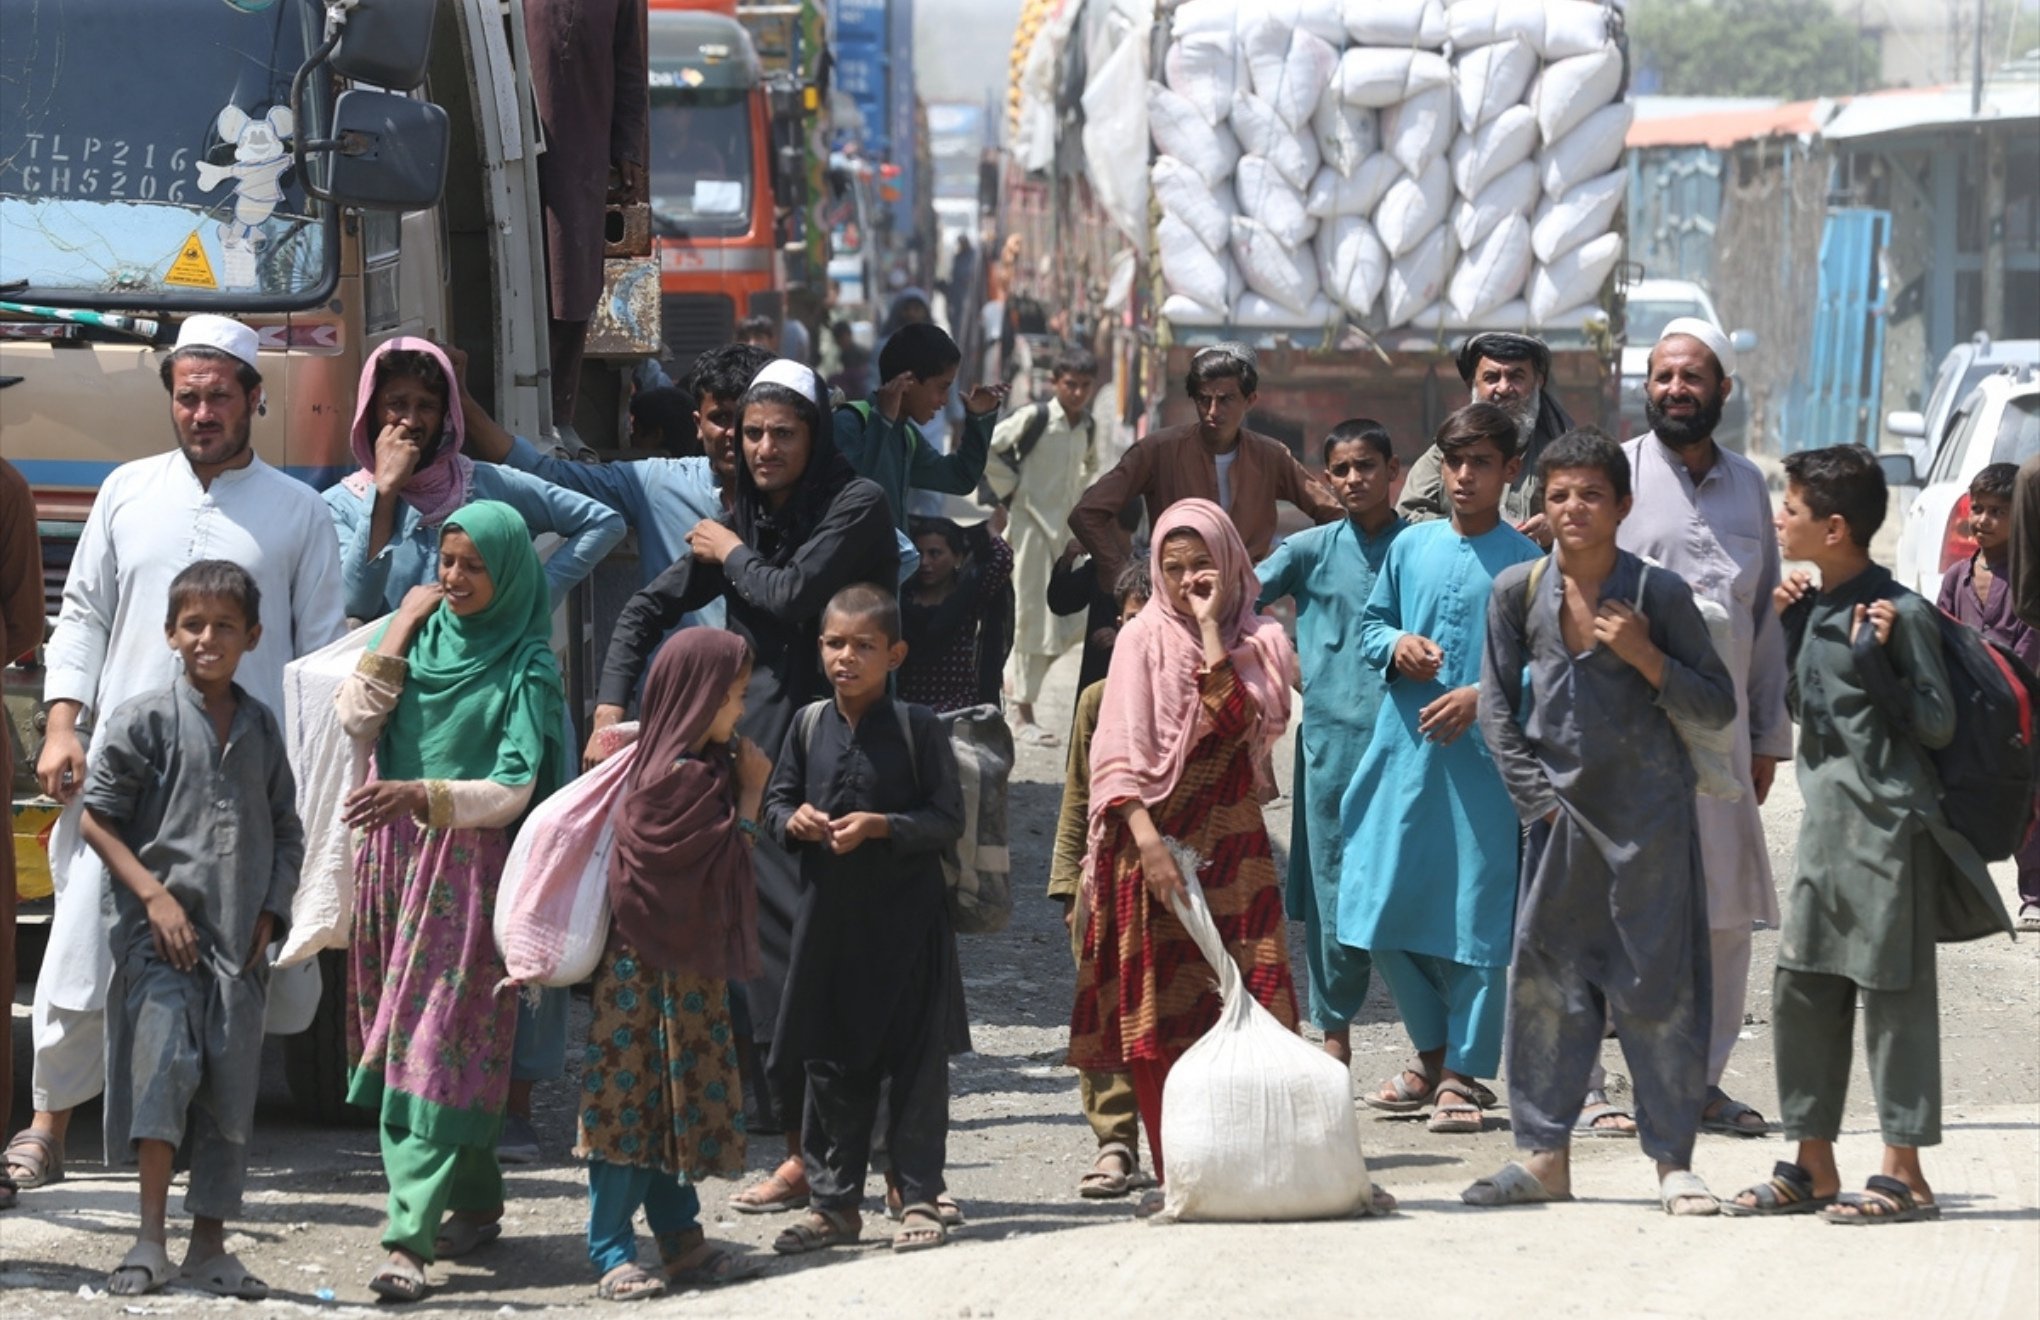 UAÖ: Afganistan’da tahliye takvimi uzatılmalı